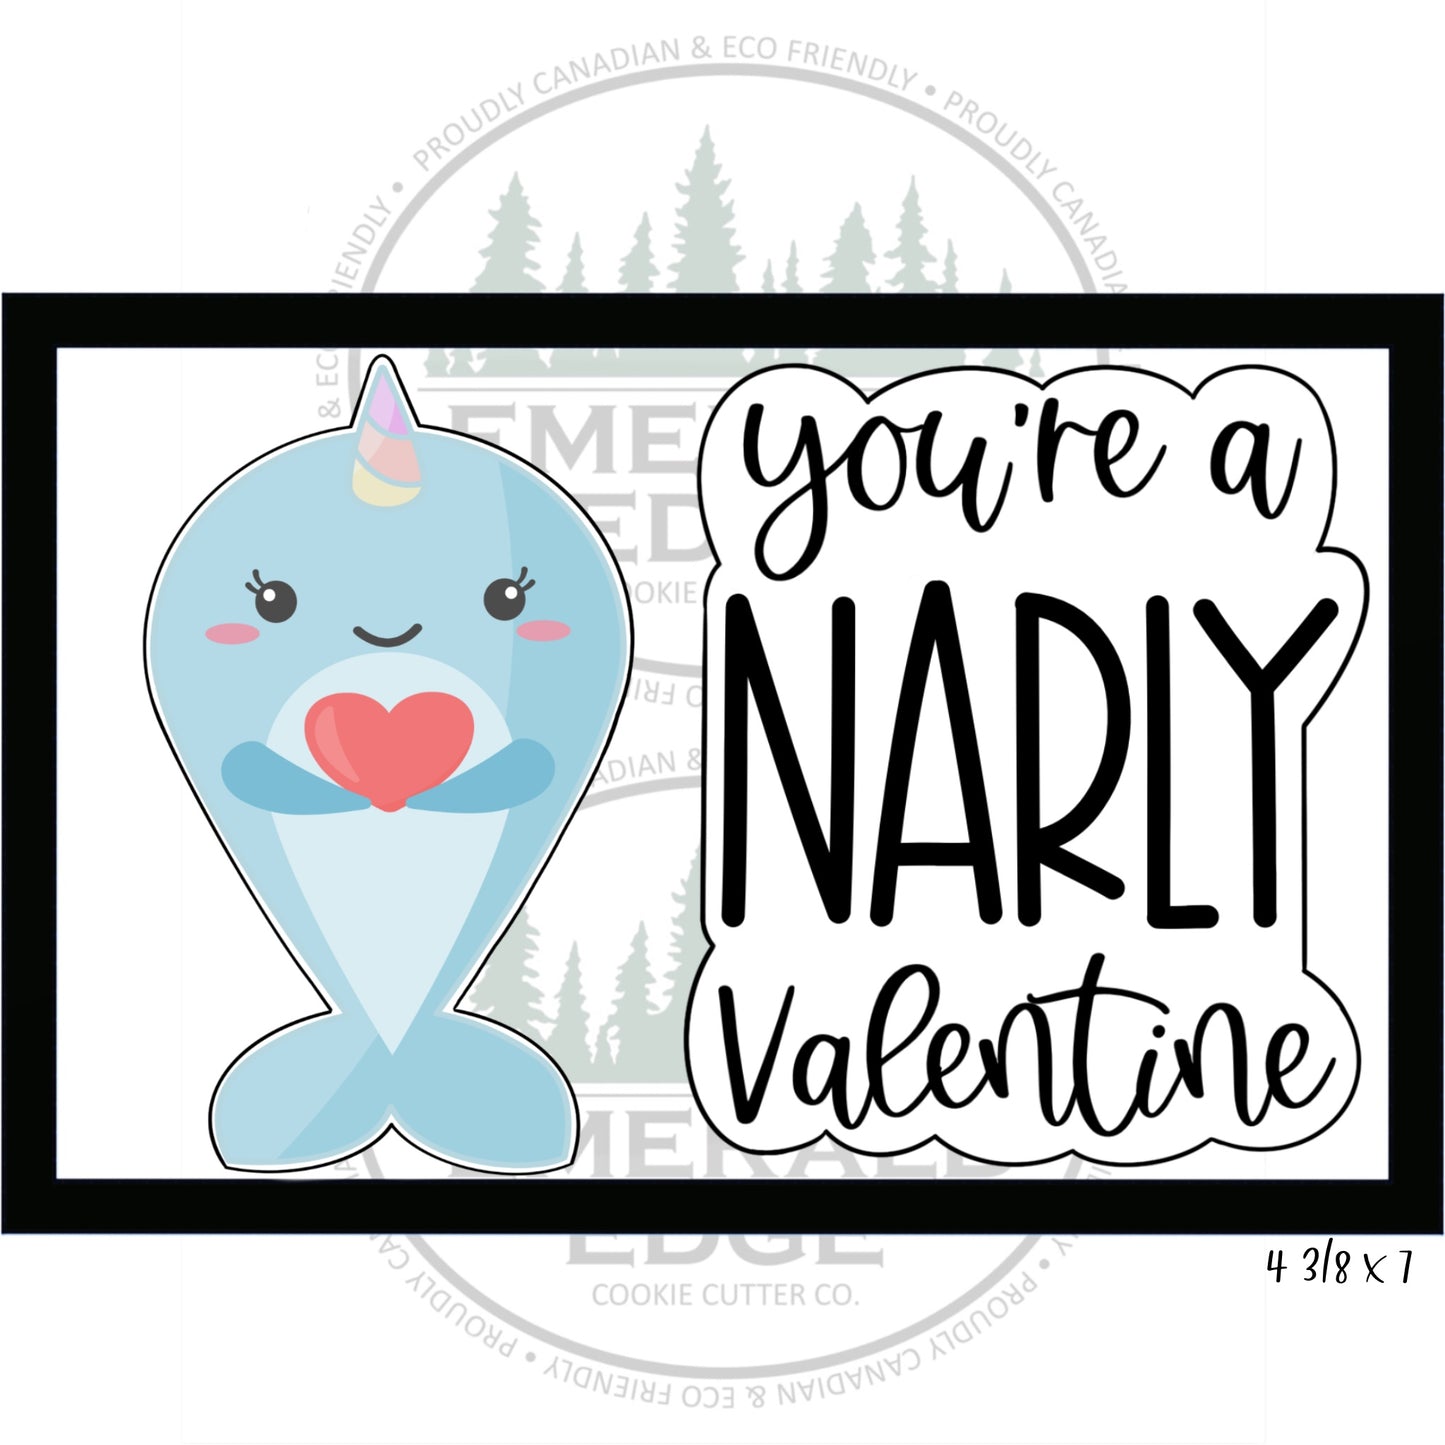 Narly Valentine